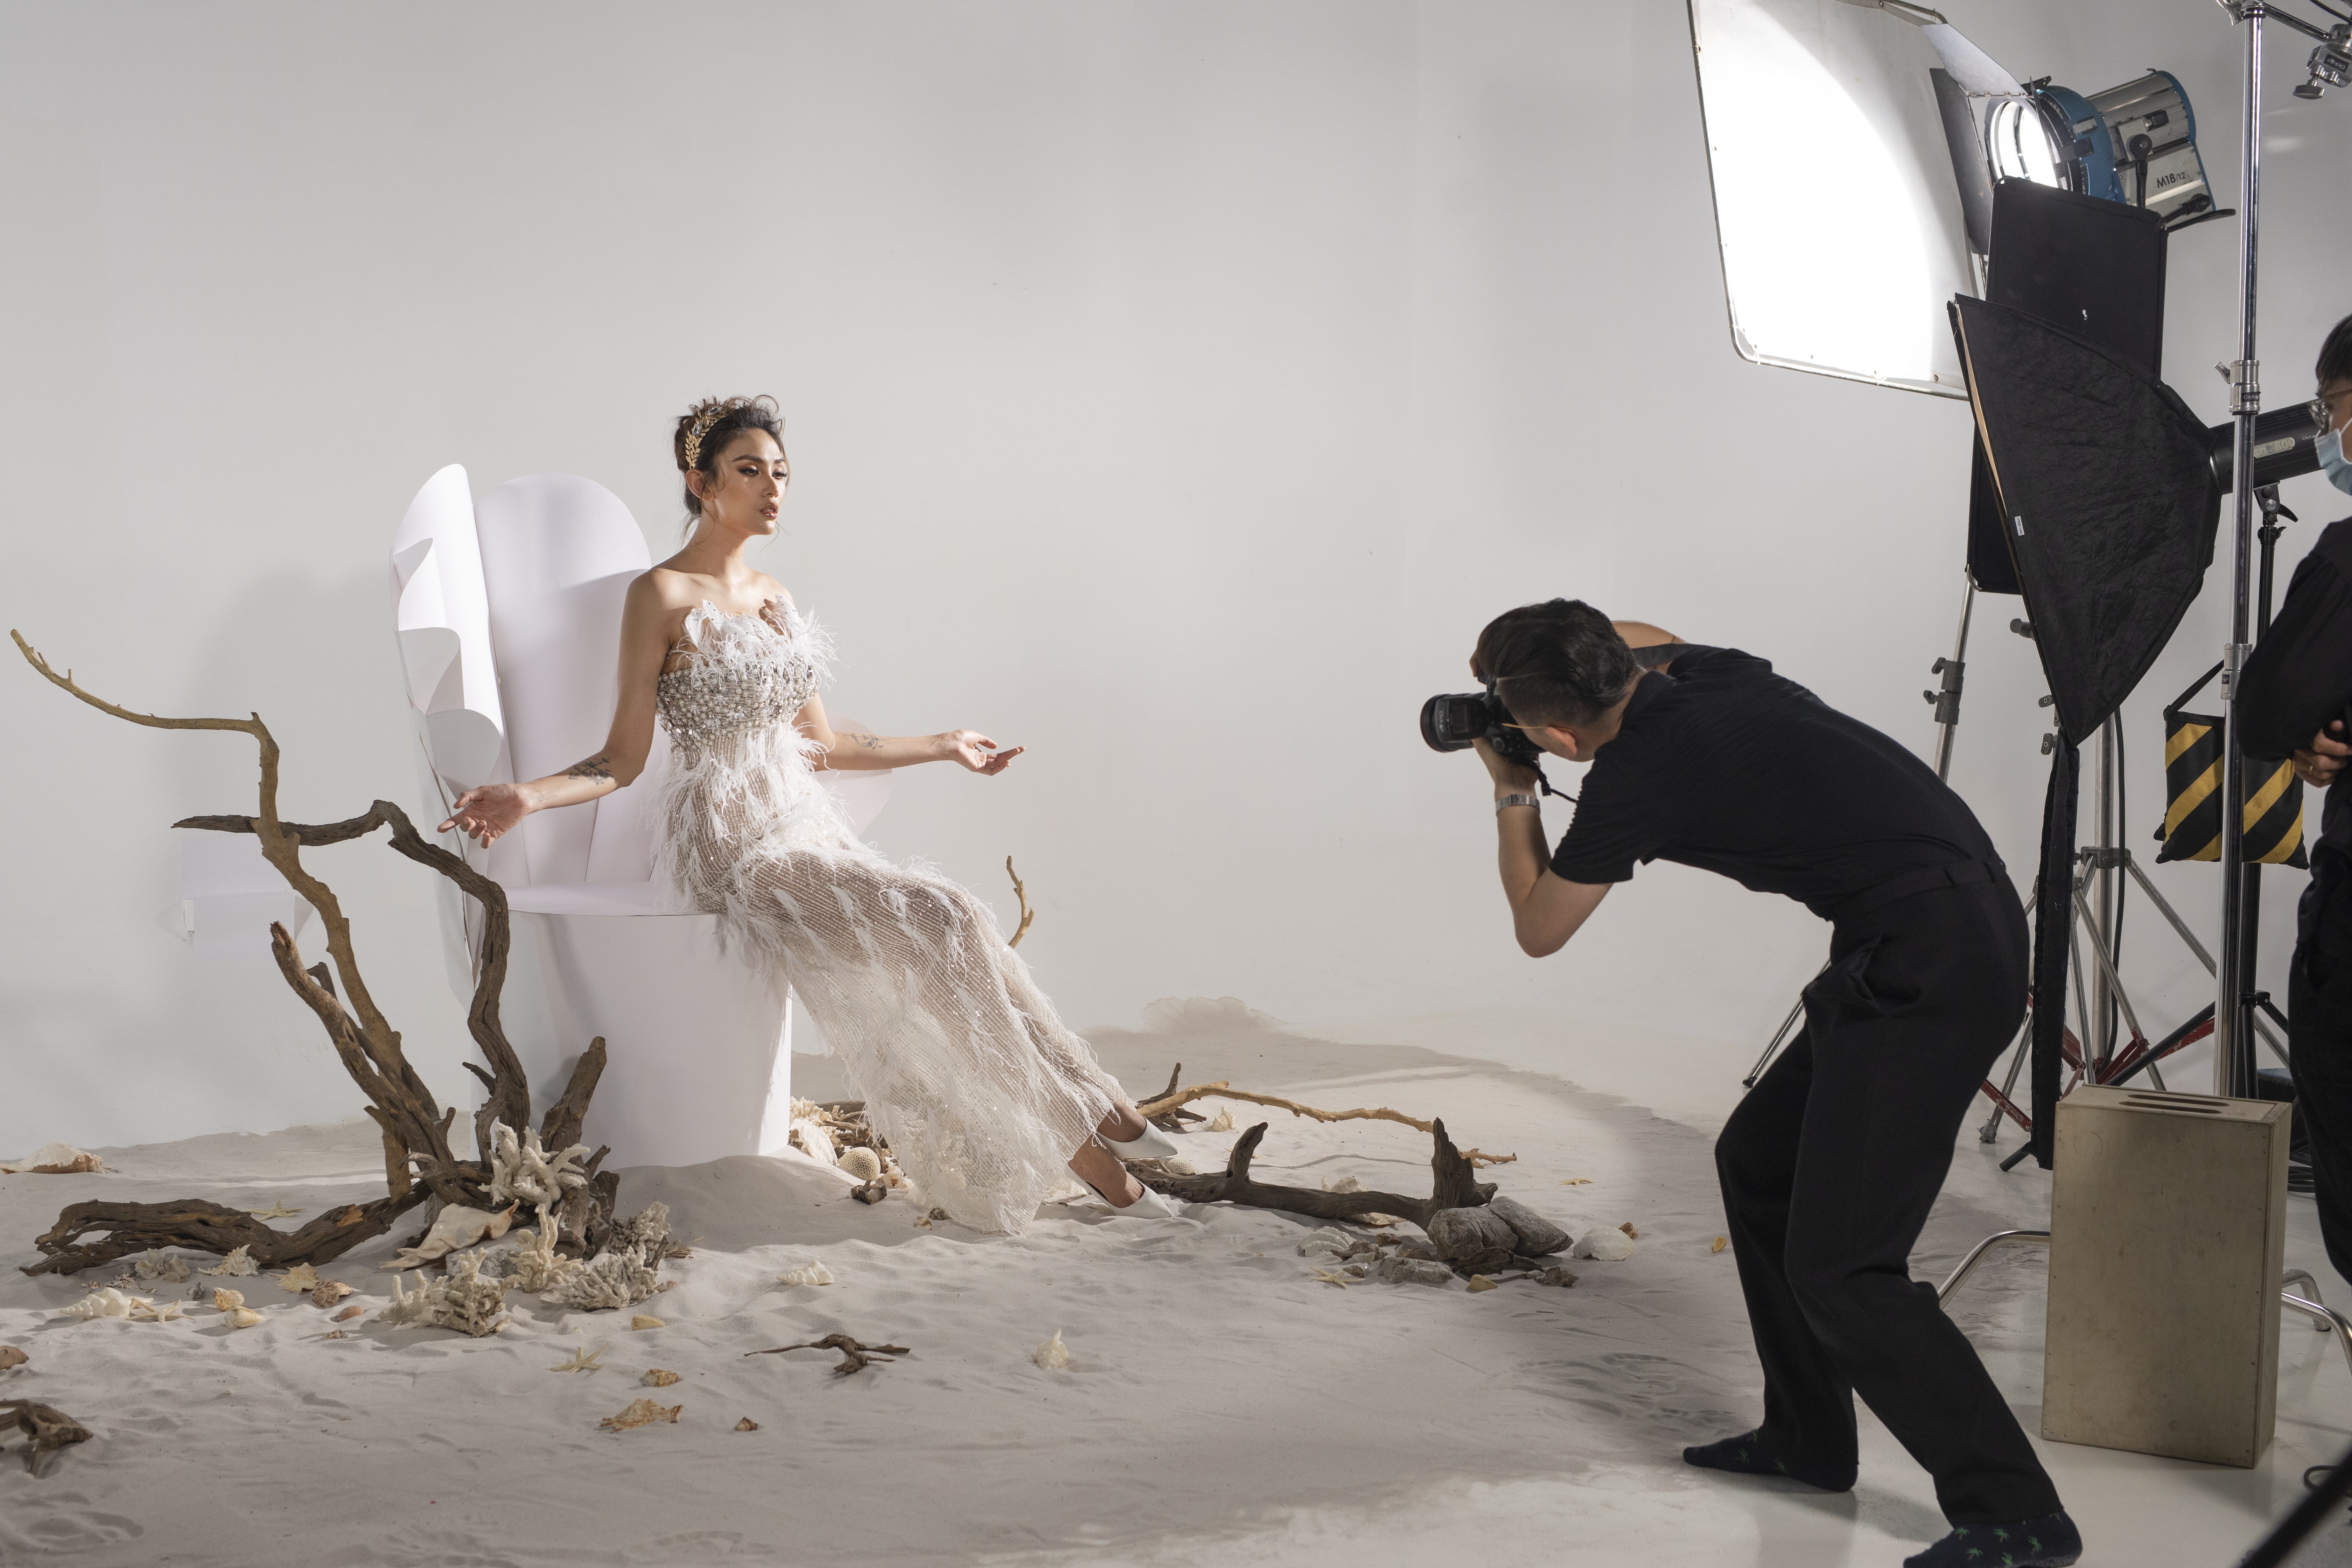 Hậu trường chụp ảnh: Những hình ảnh đầu tiên của bộ sưu tập váy cưới độc quyền cùng siêu mẫu Võ Hoàng Yến Marry